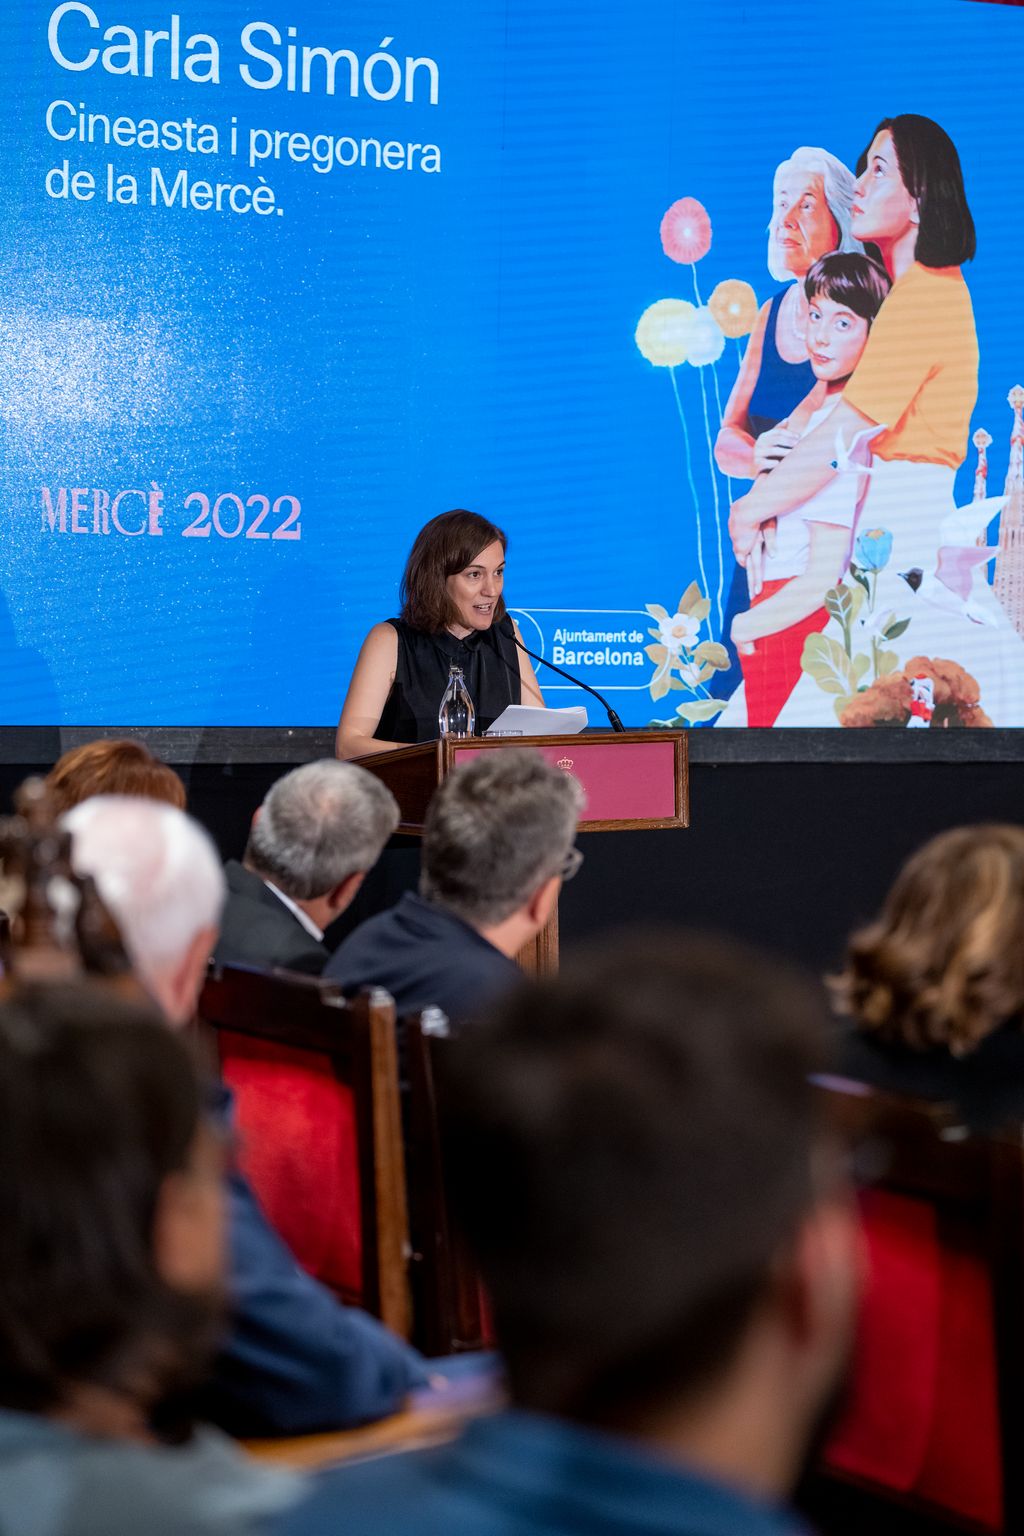 Momento del parlamento de Carla Simón durante el pregón de La Mercè 2022 en el Saló de Cent